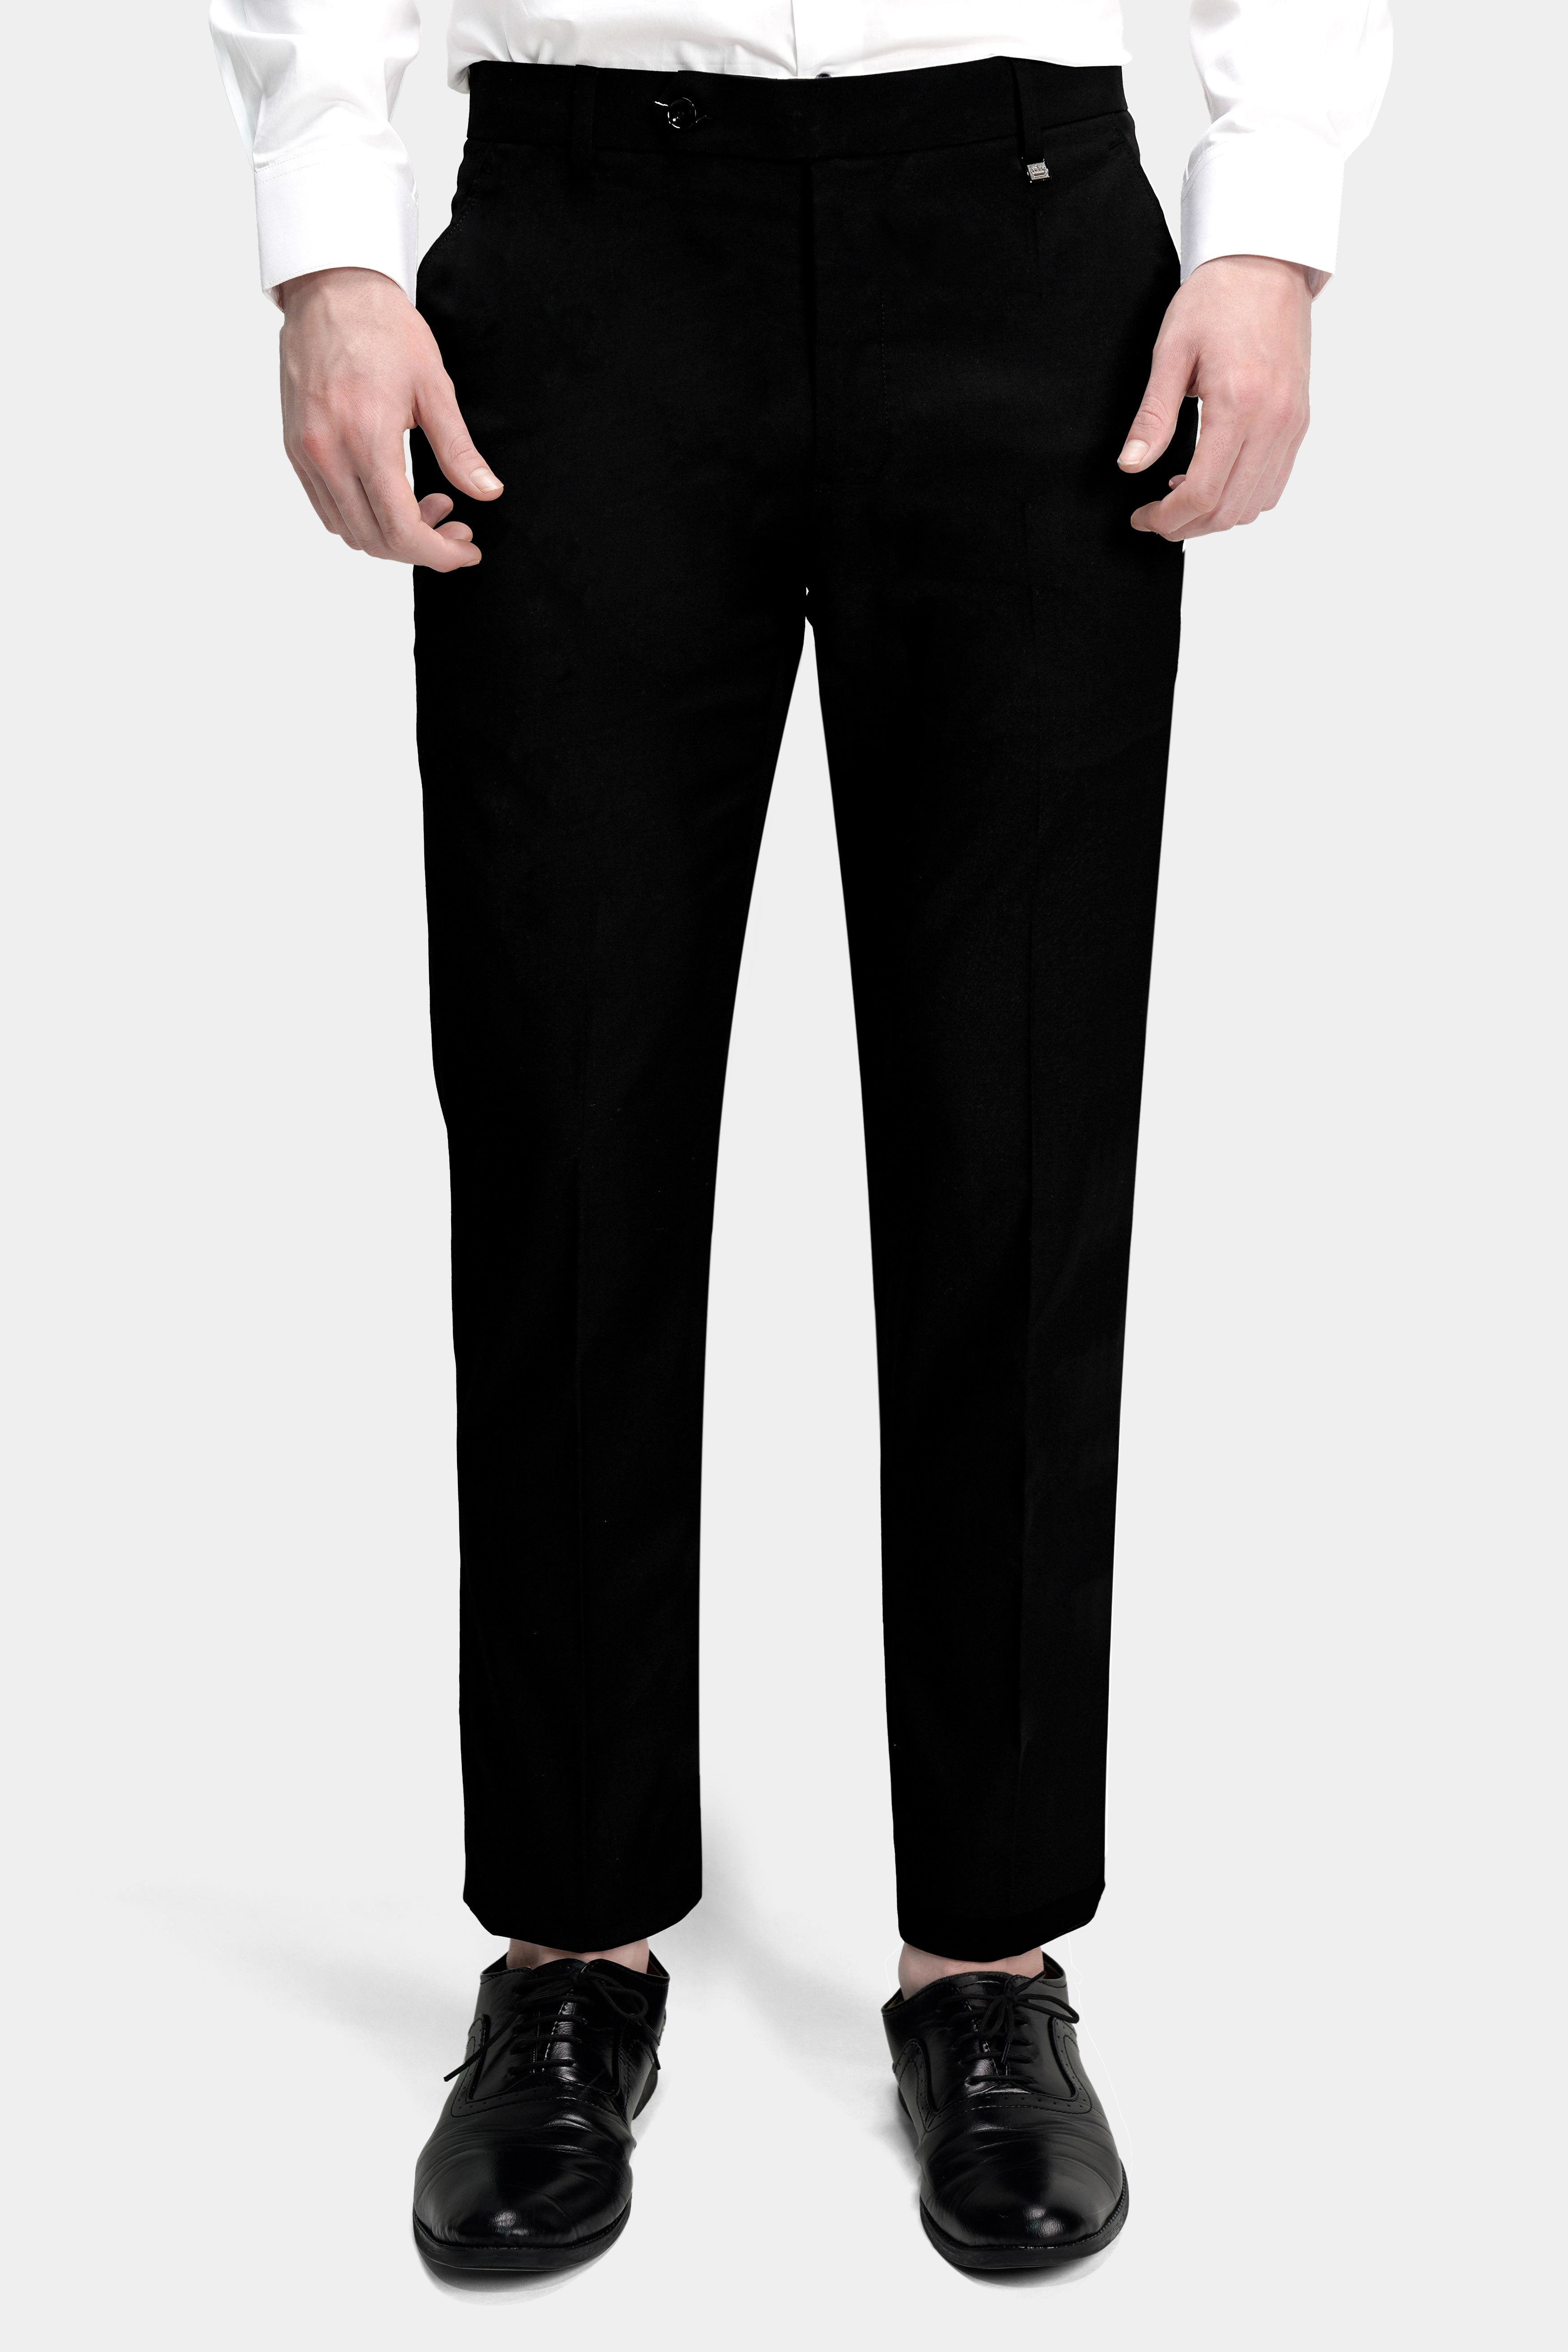 Semi Formal Trousers - Buy Semi Formal Trousers online in India